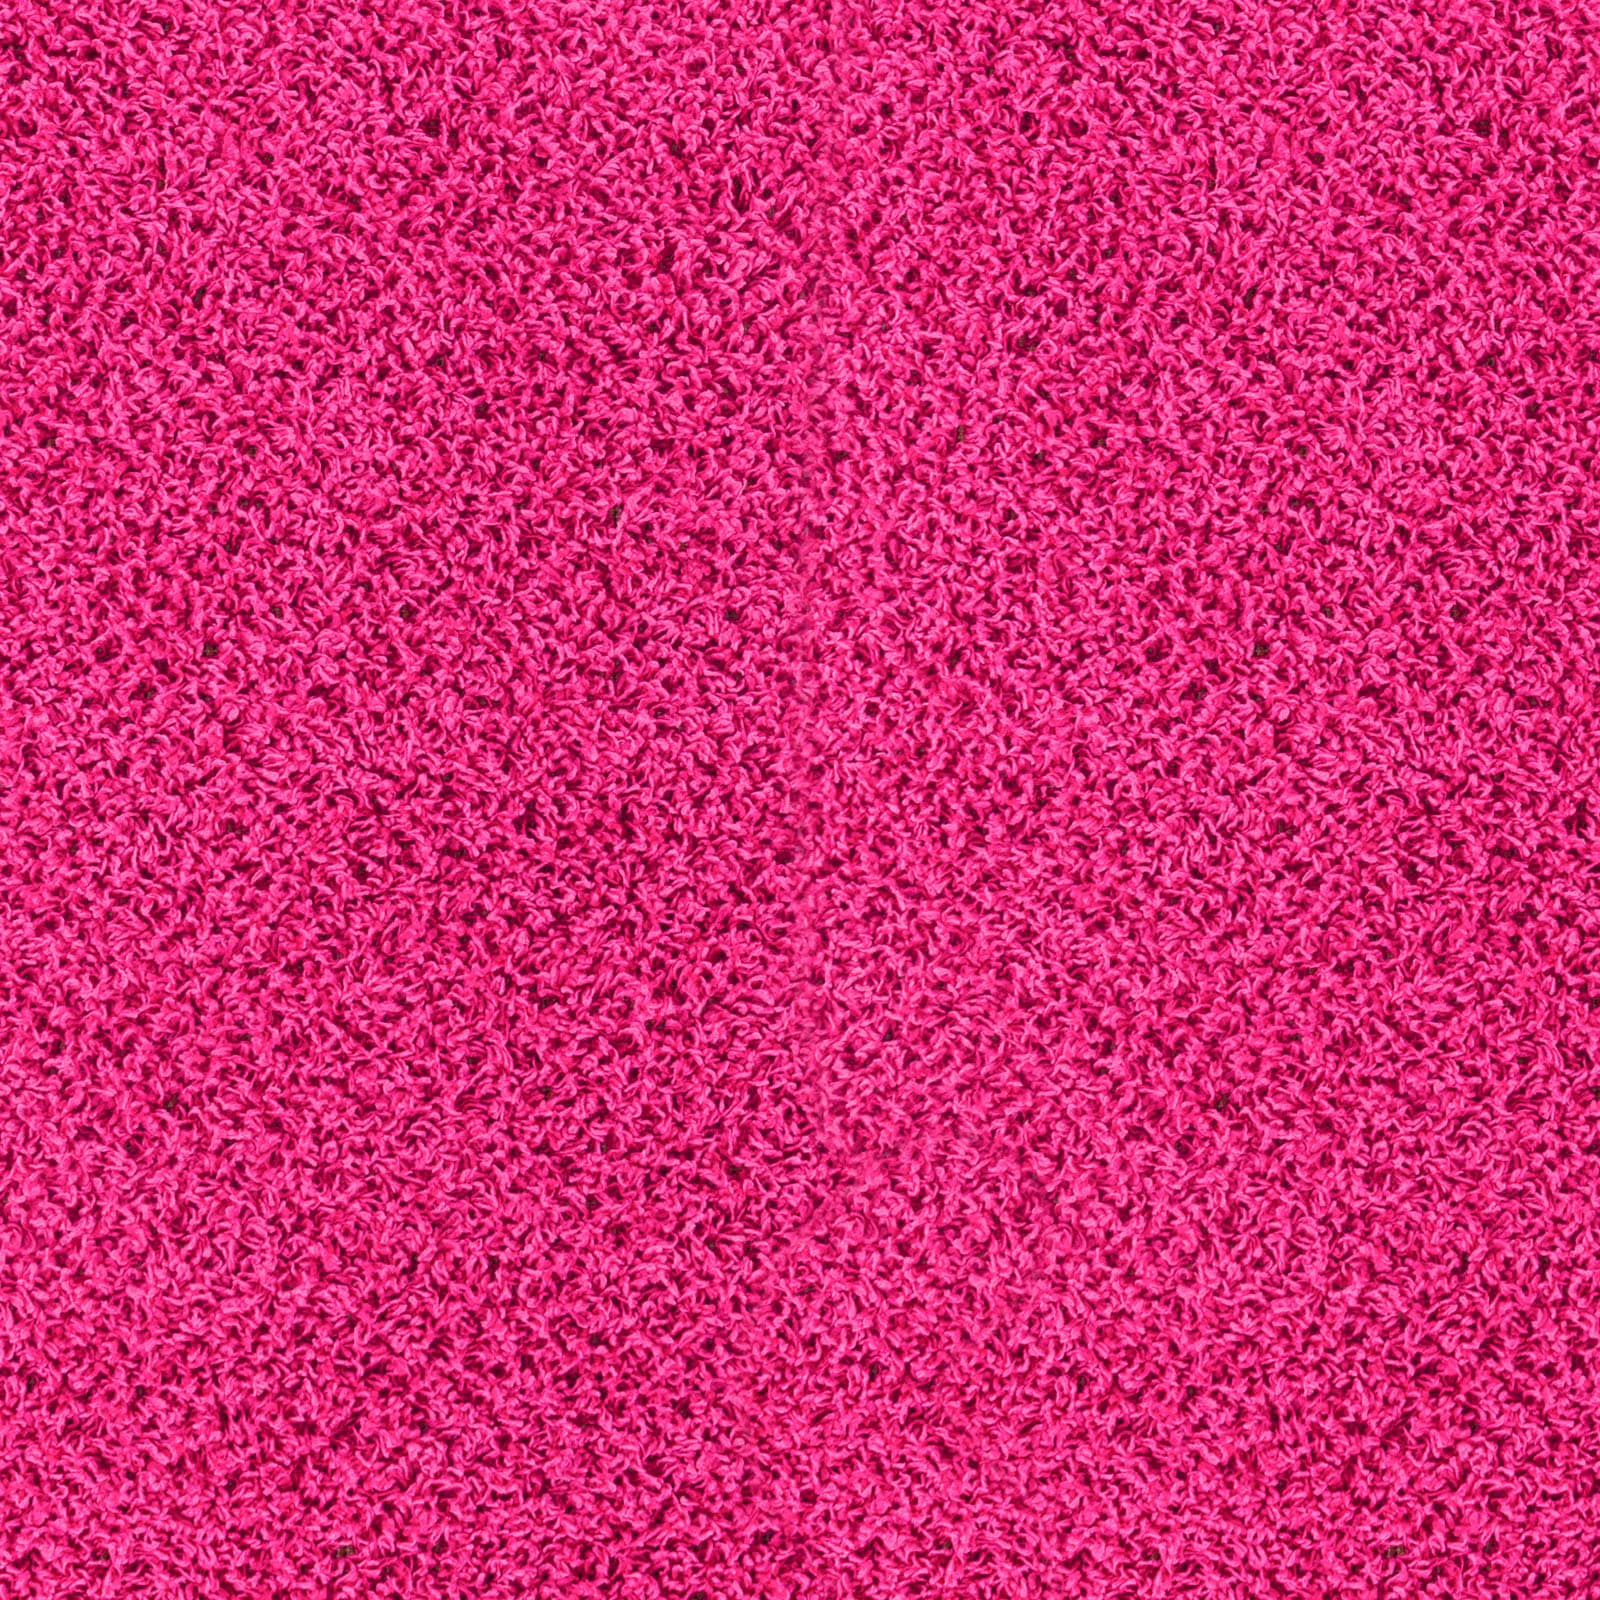 Surya Hochflor-Teppich »UNI CHIC 2308«, rechteckig, Flauschig, Langflor, Weich, Wohnzimmer Flurteppich, Pink